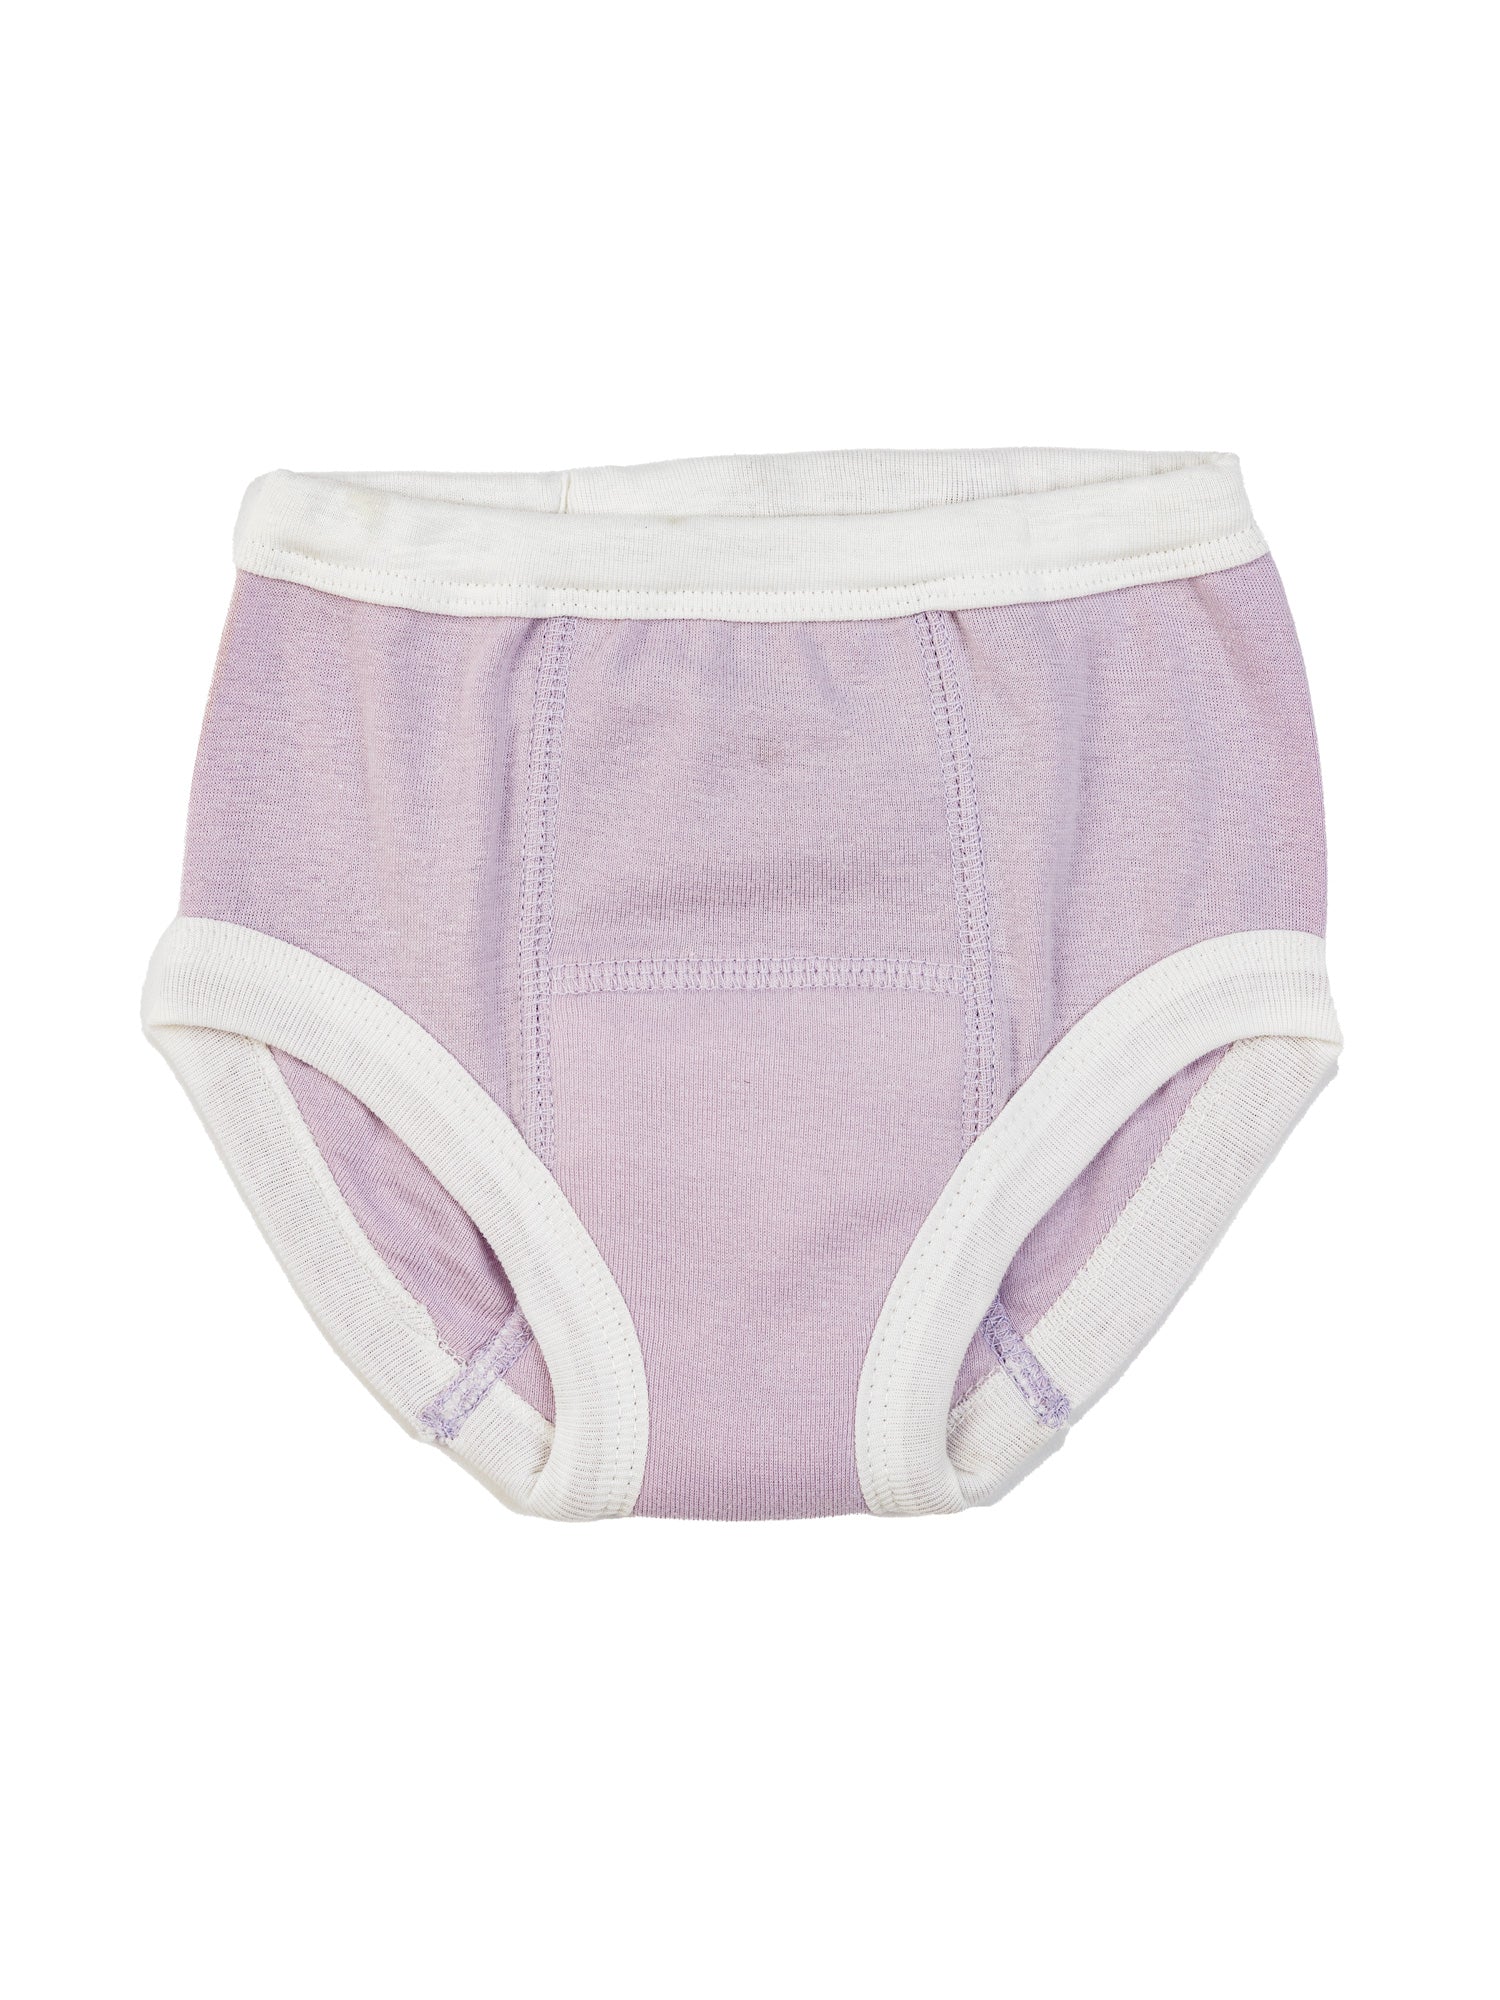 8 Packs High Waist Training Underwear For Girls 2T Cotton 2T Underwear  Girls Reusable Toddler Potty Training Underwear Girls Soft Toddler  Underwear